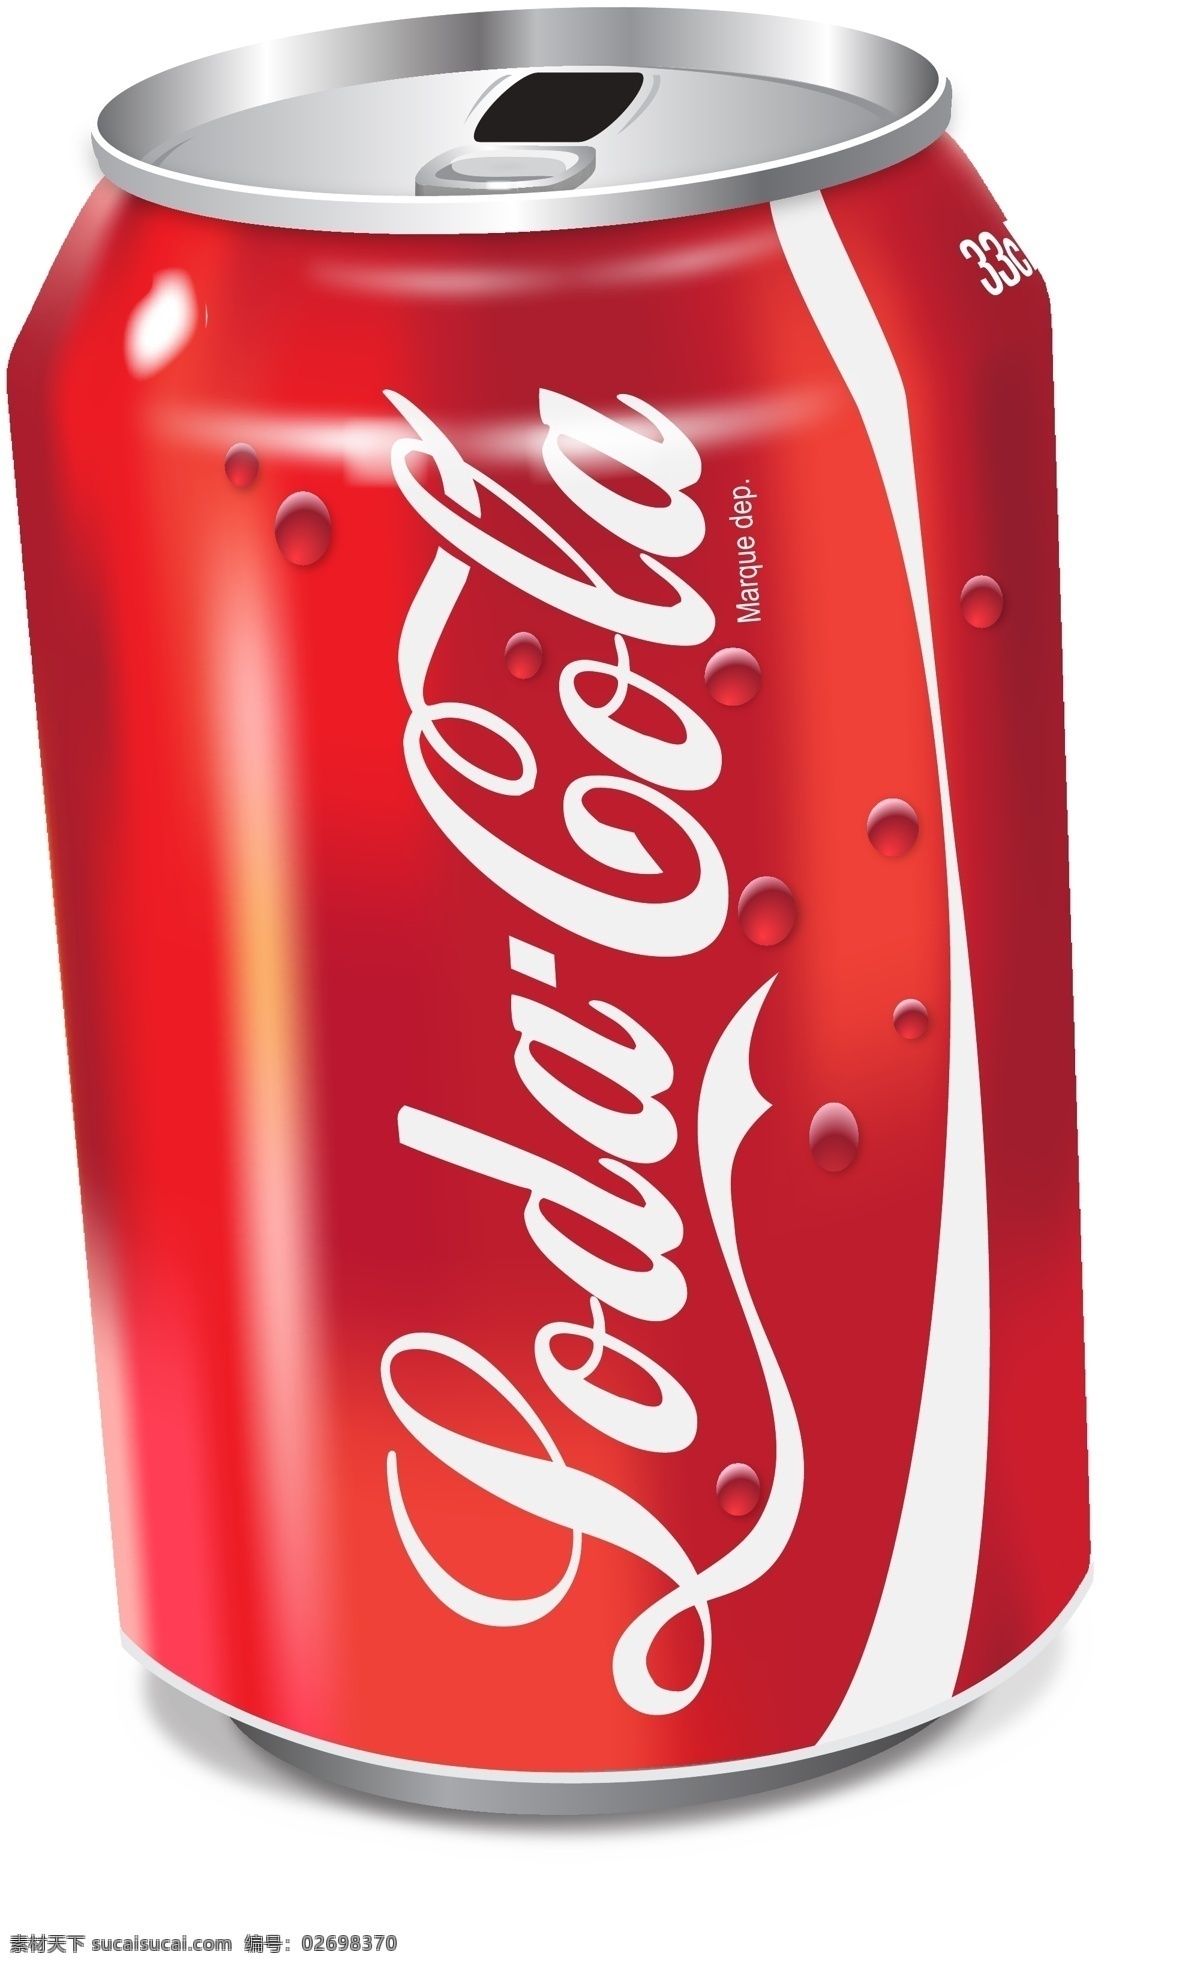 可口可乐 包装设计 可乐瓶 红色 矢量图 生活百科 餐饮美食